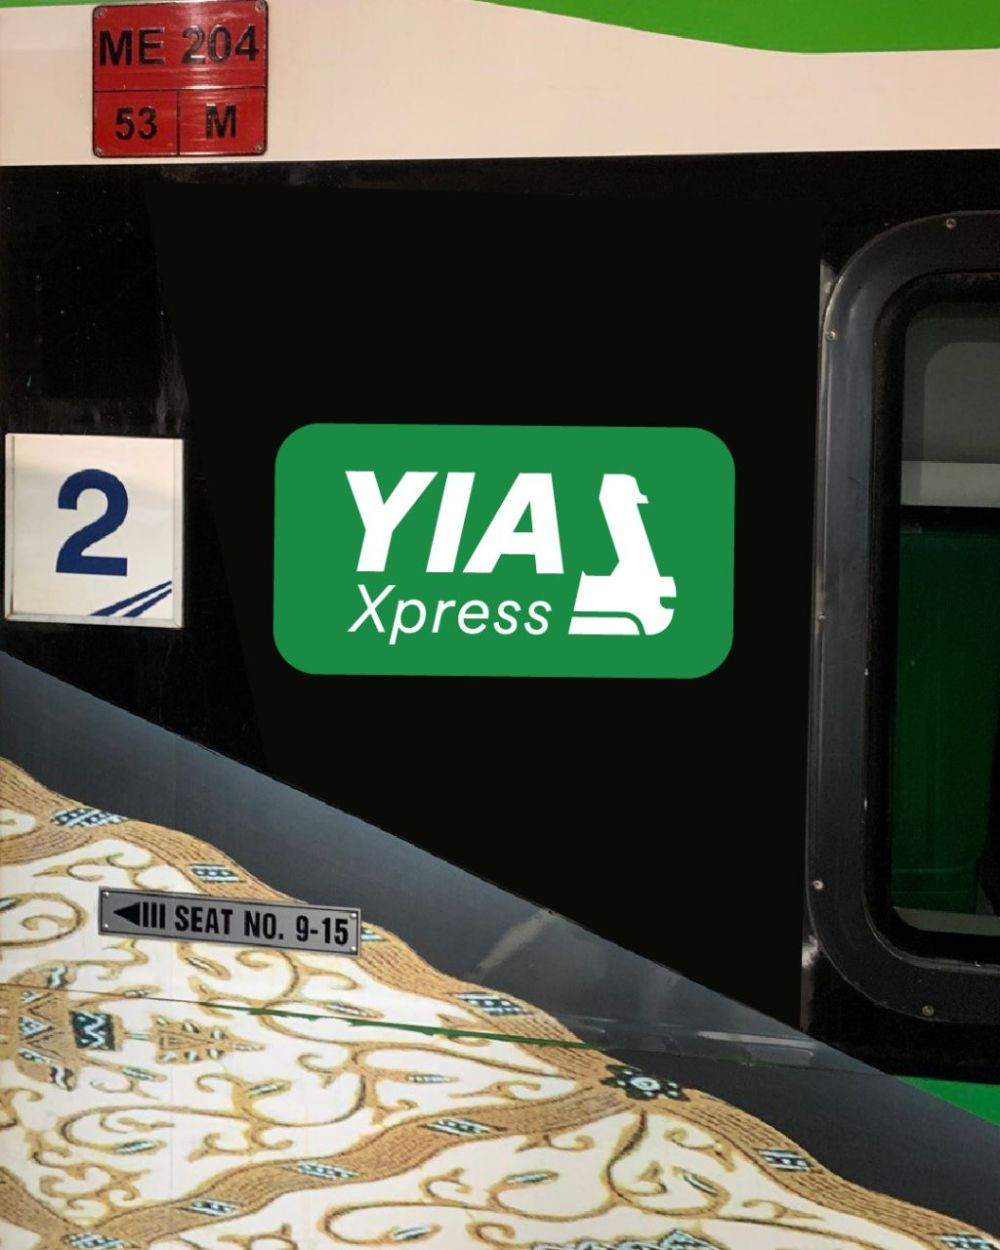 KA Bandara Xpress hanya 35 Menit Menuju Bandara YIA 